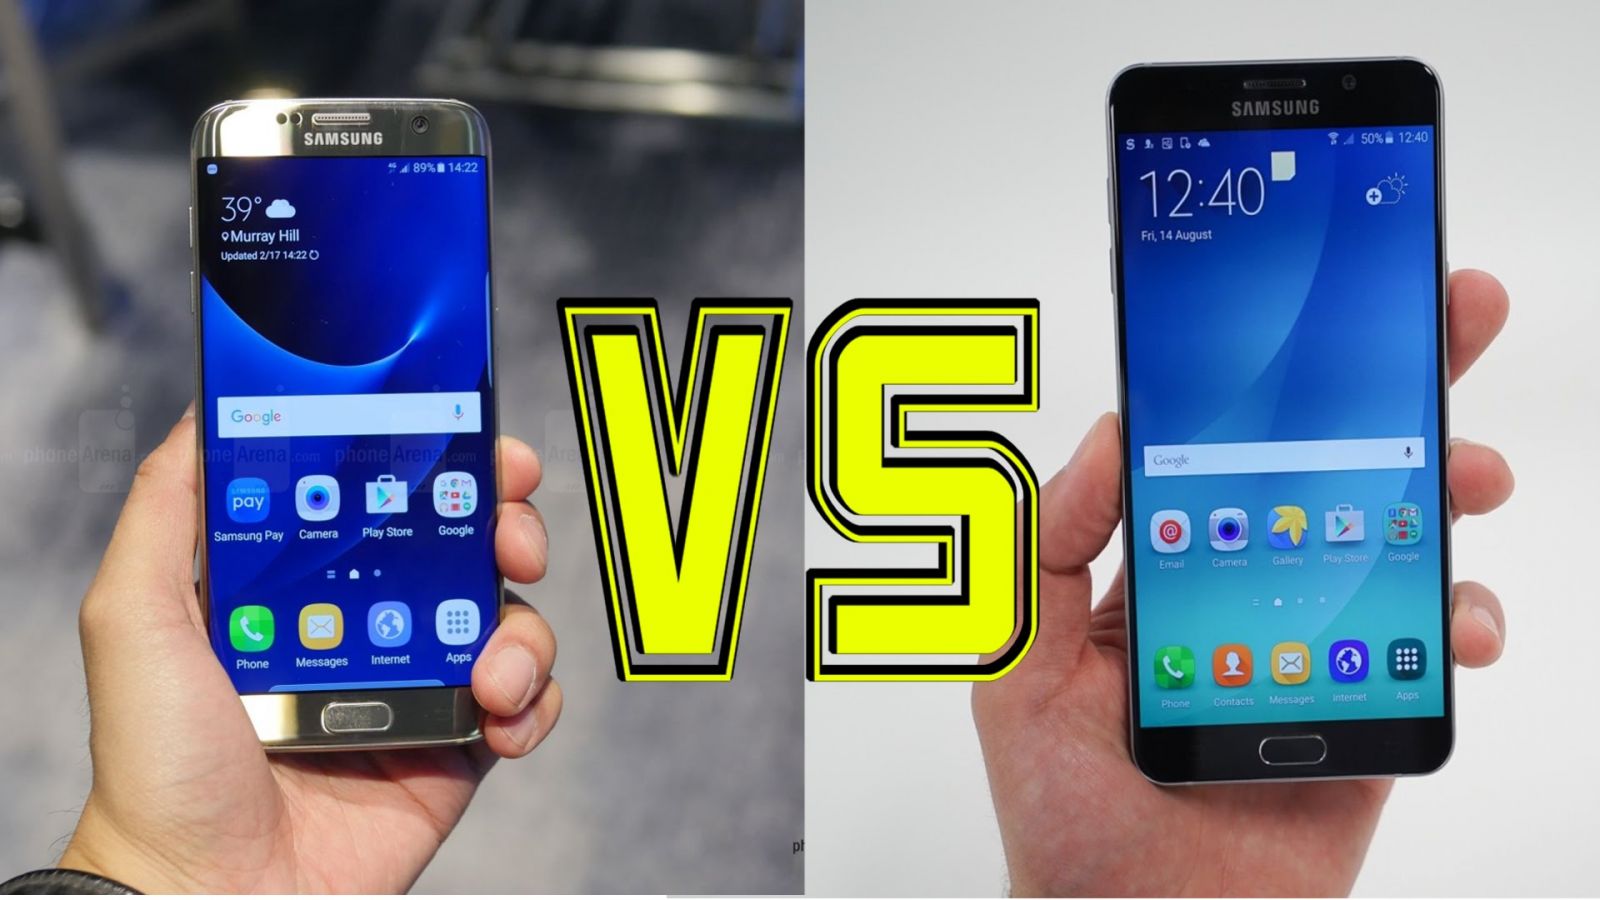 So sánh Samsung Galaxy S7 edge và Note 5